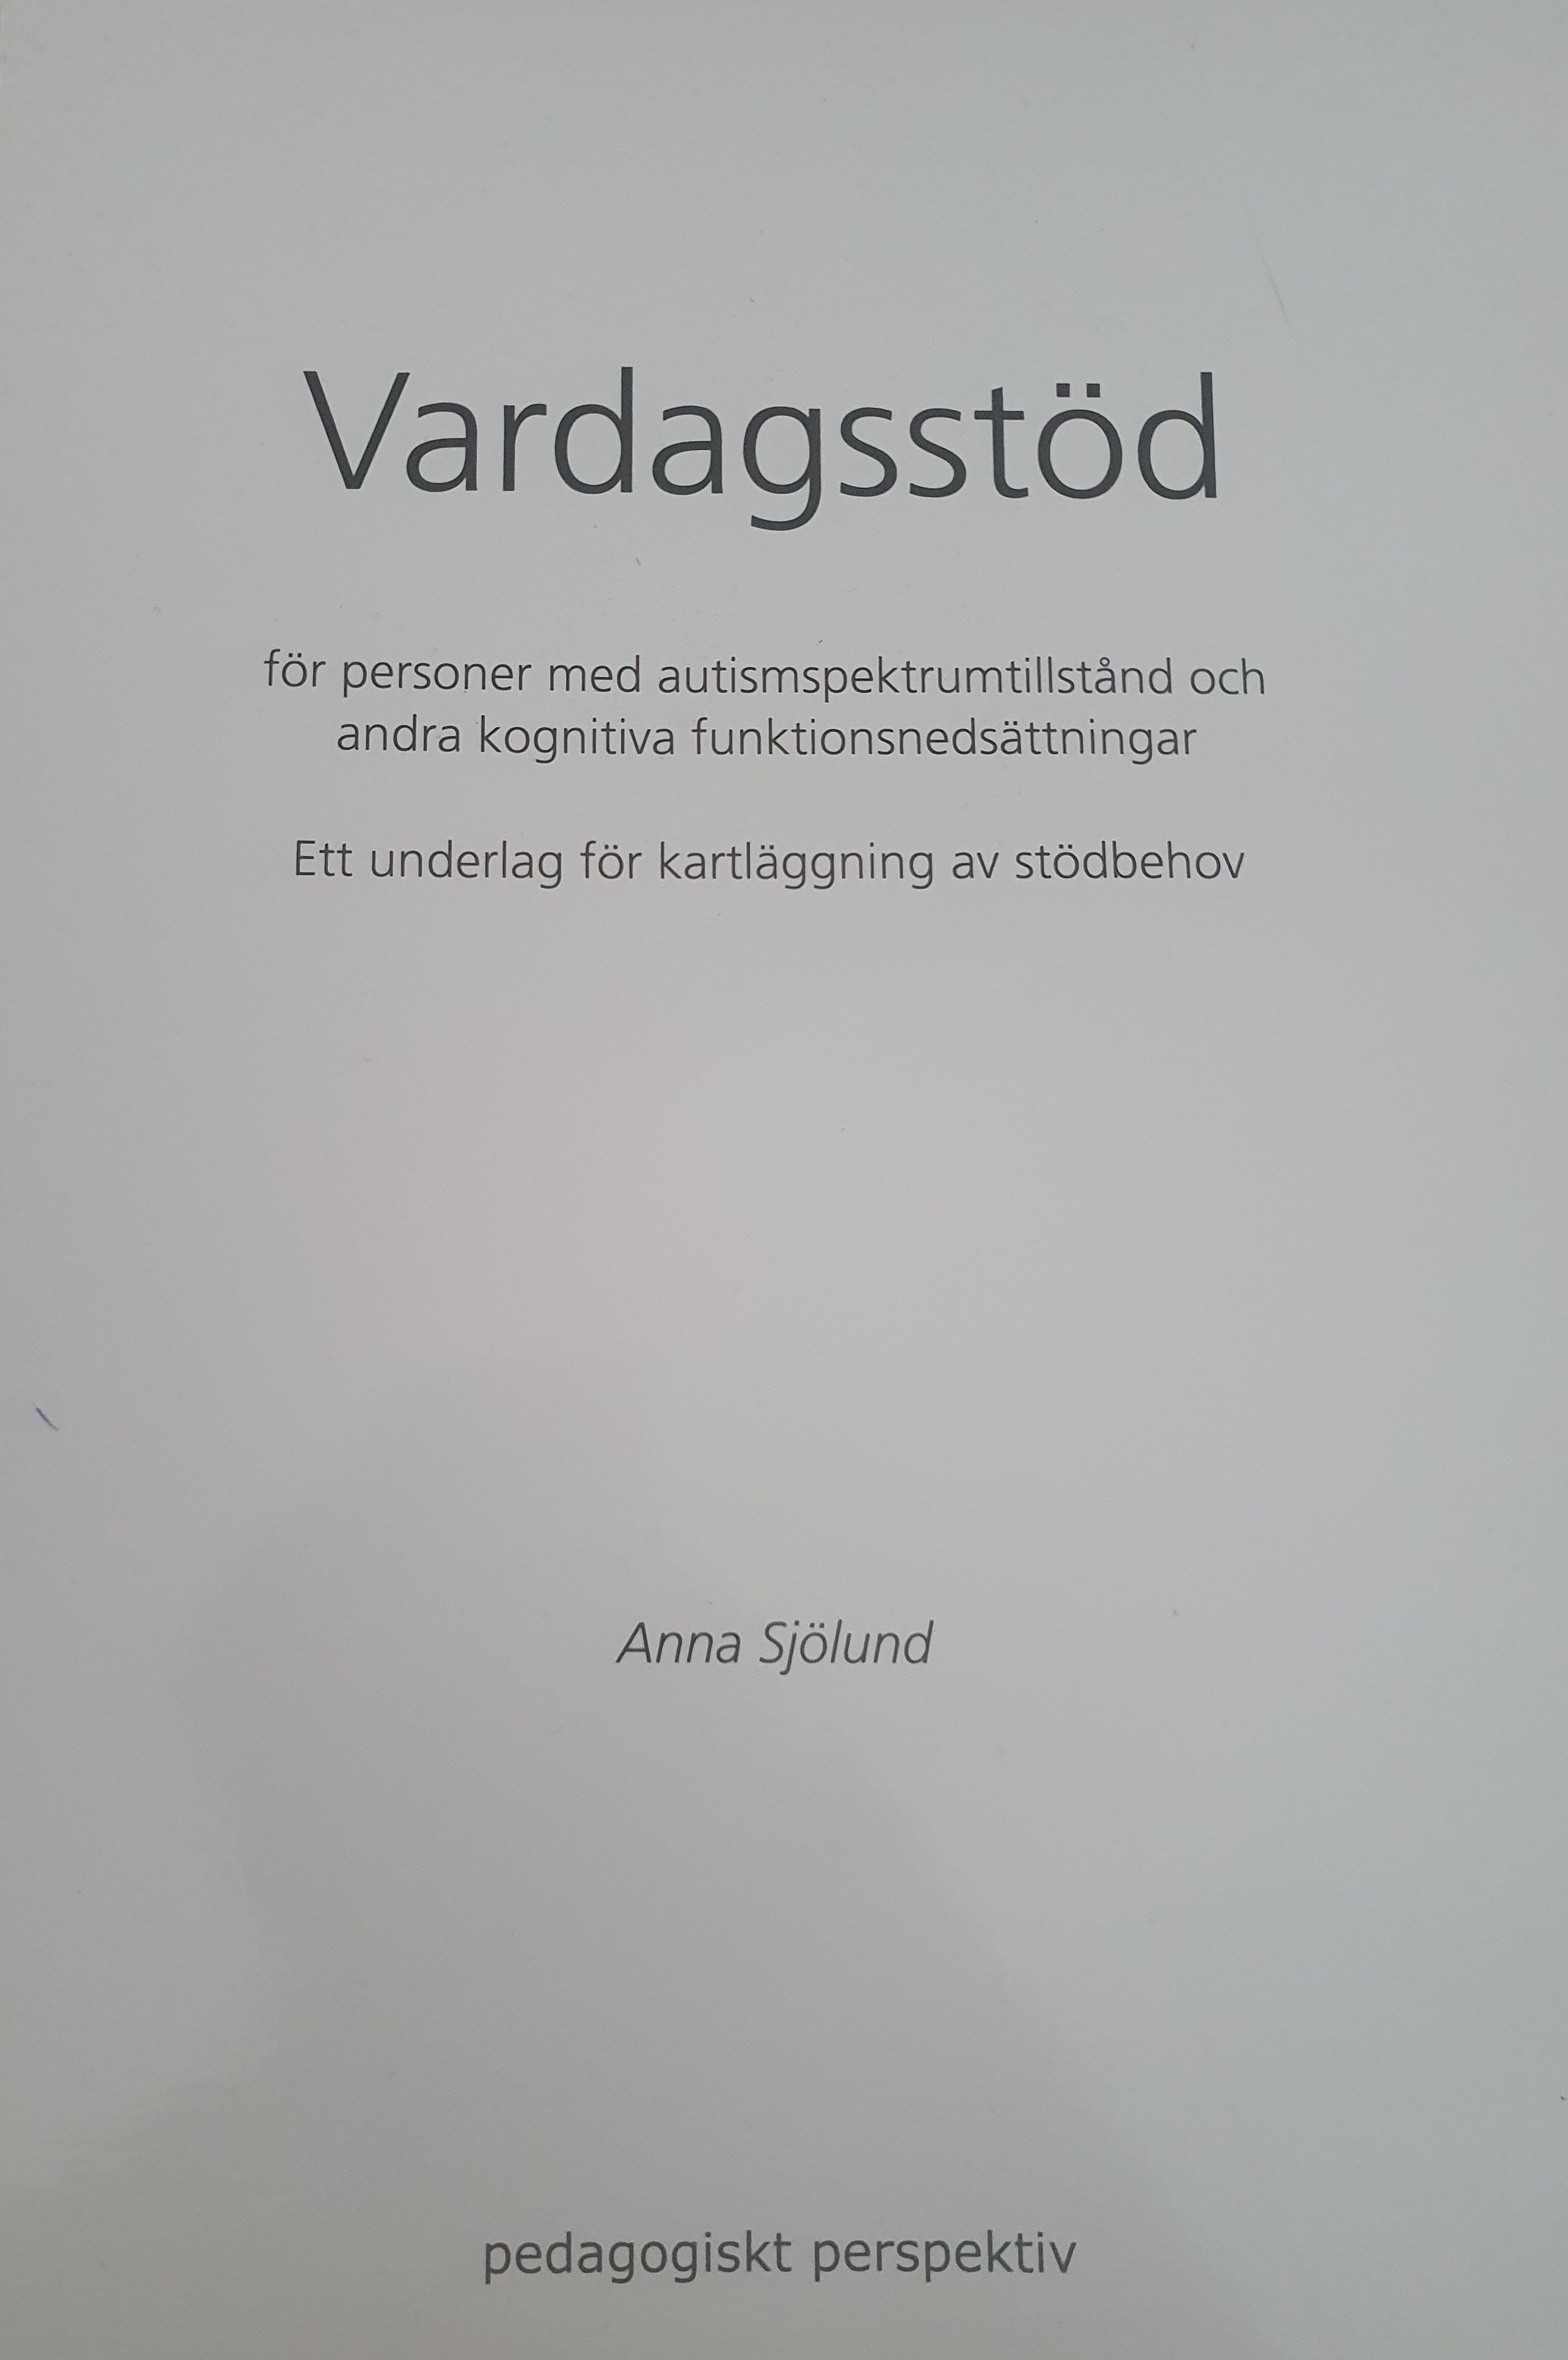 Vardagsstöd för personer med autismspektrumtillstånd och andra kognitiva funktionsnedsättnigar: ett underlag för kartläggning av stödbehov; Anna Sjölund; 2008